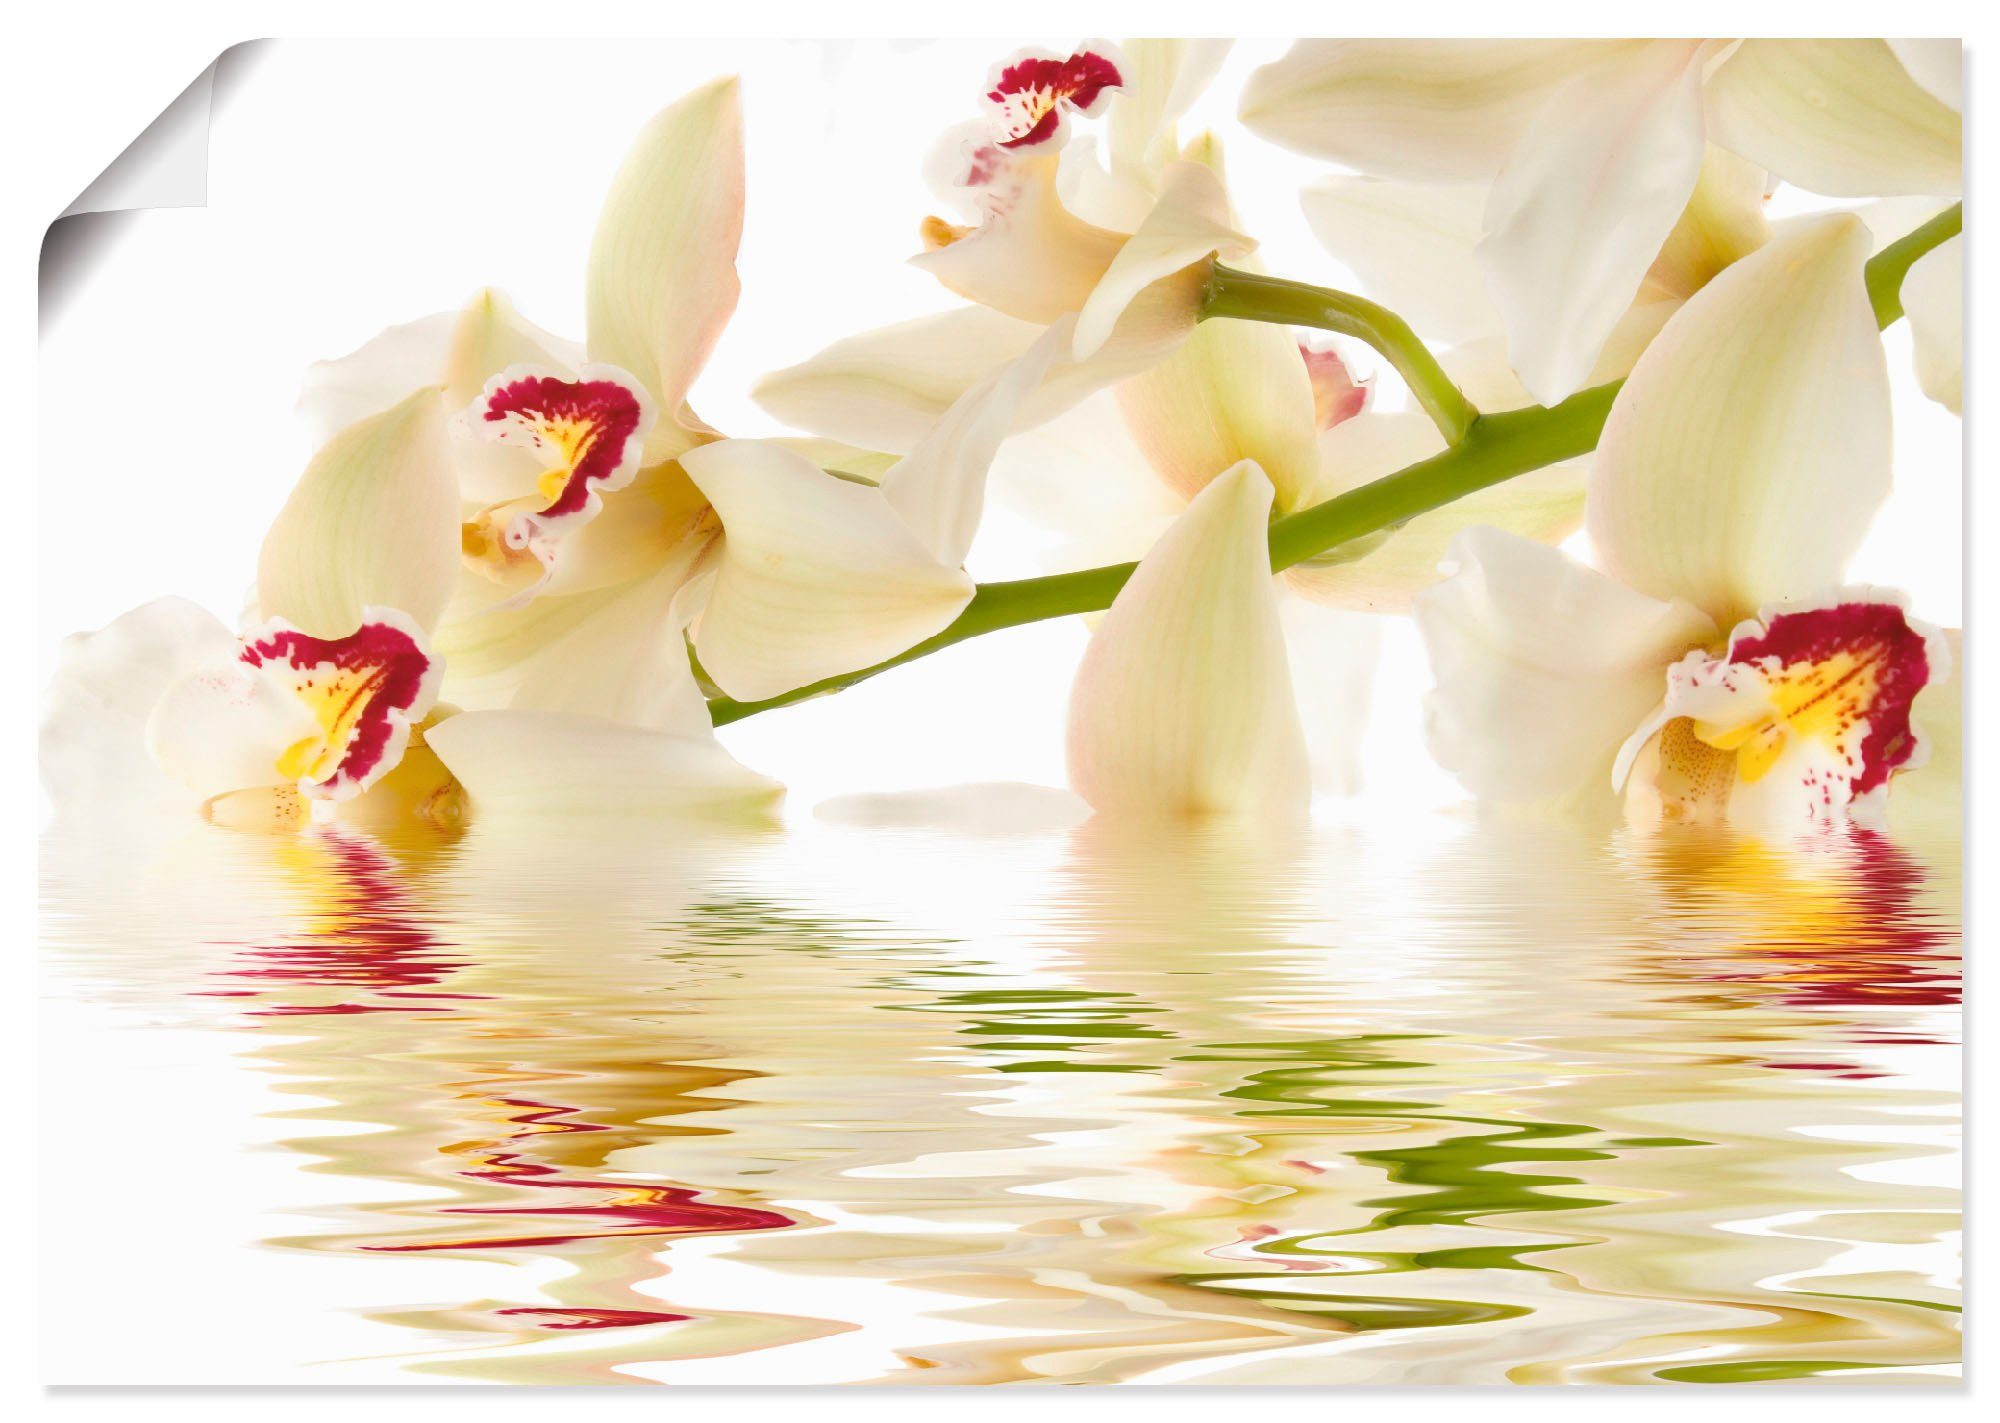 Artland Artprint Witte orchidee met waterreflectie in vele afmetingen & productsoorten -artprint op linnen, poster, muursticker / wandfolie ook geschikt voor de badkamer (1 stuk)